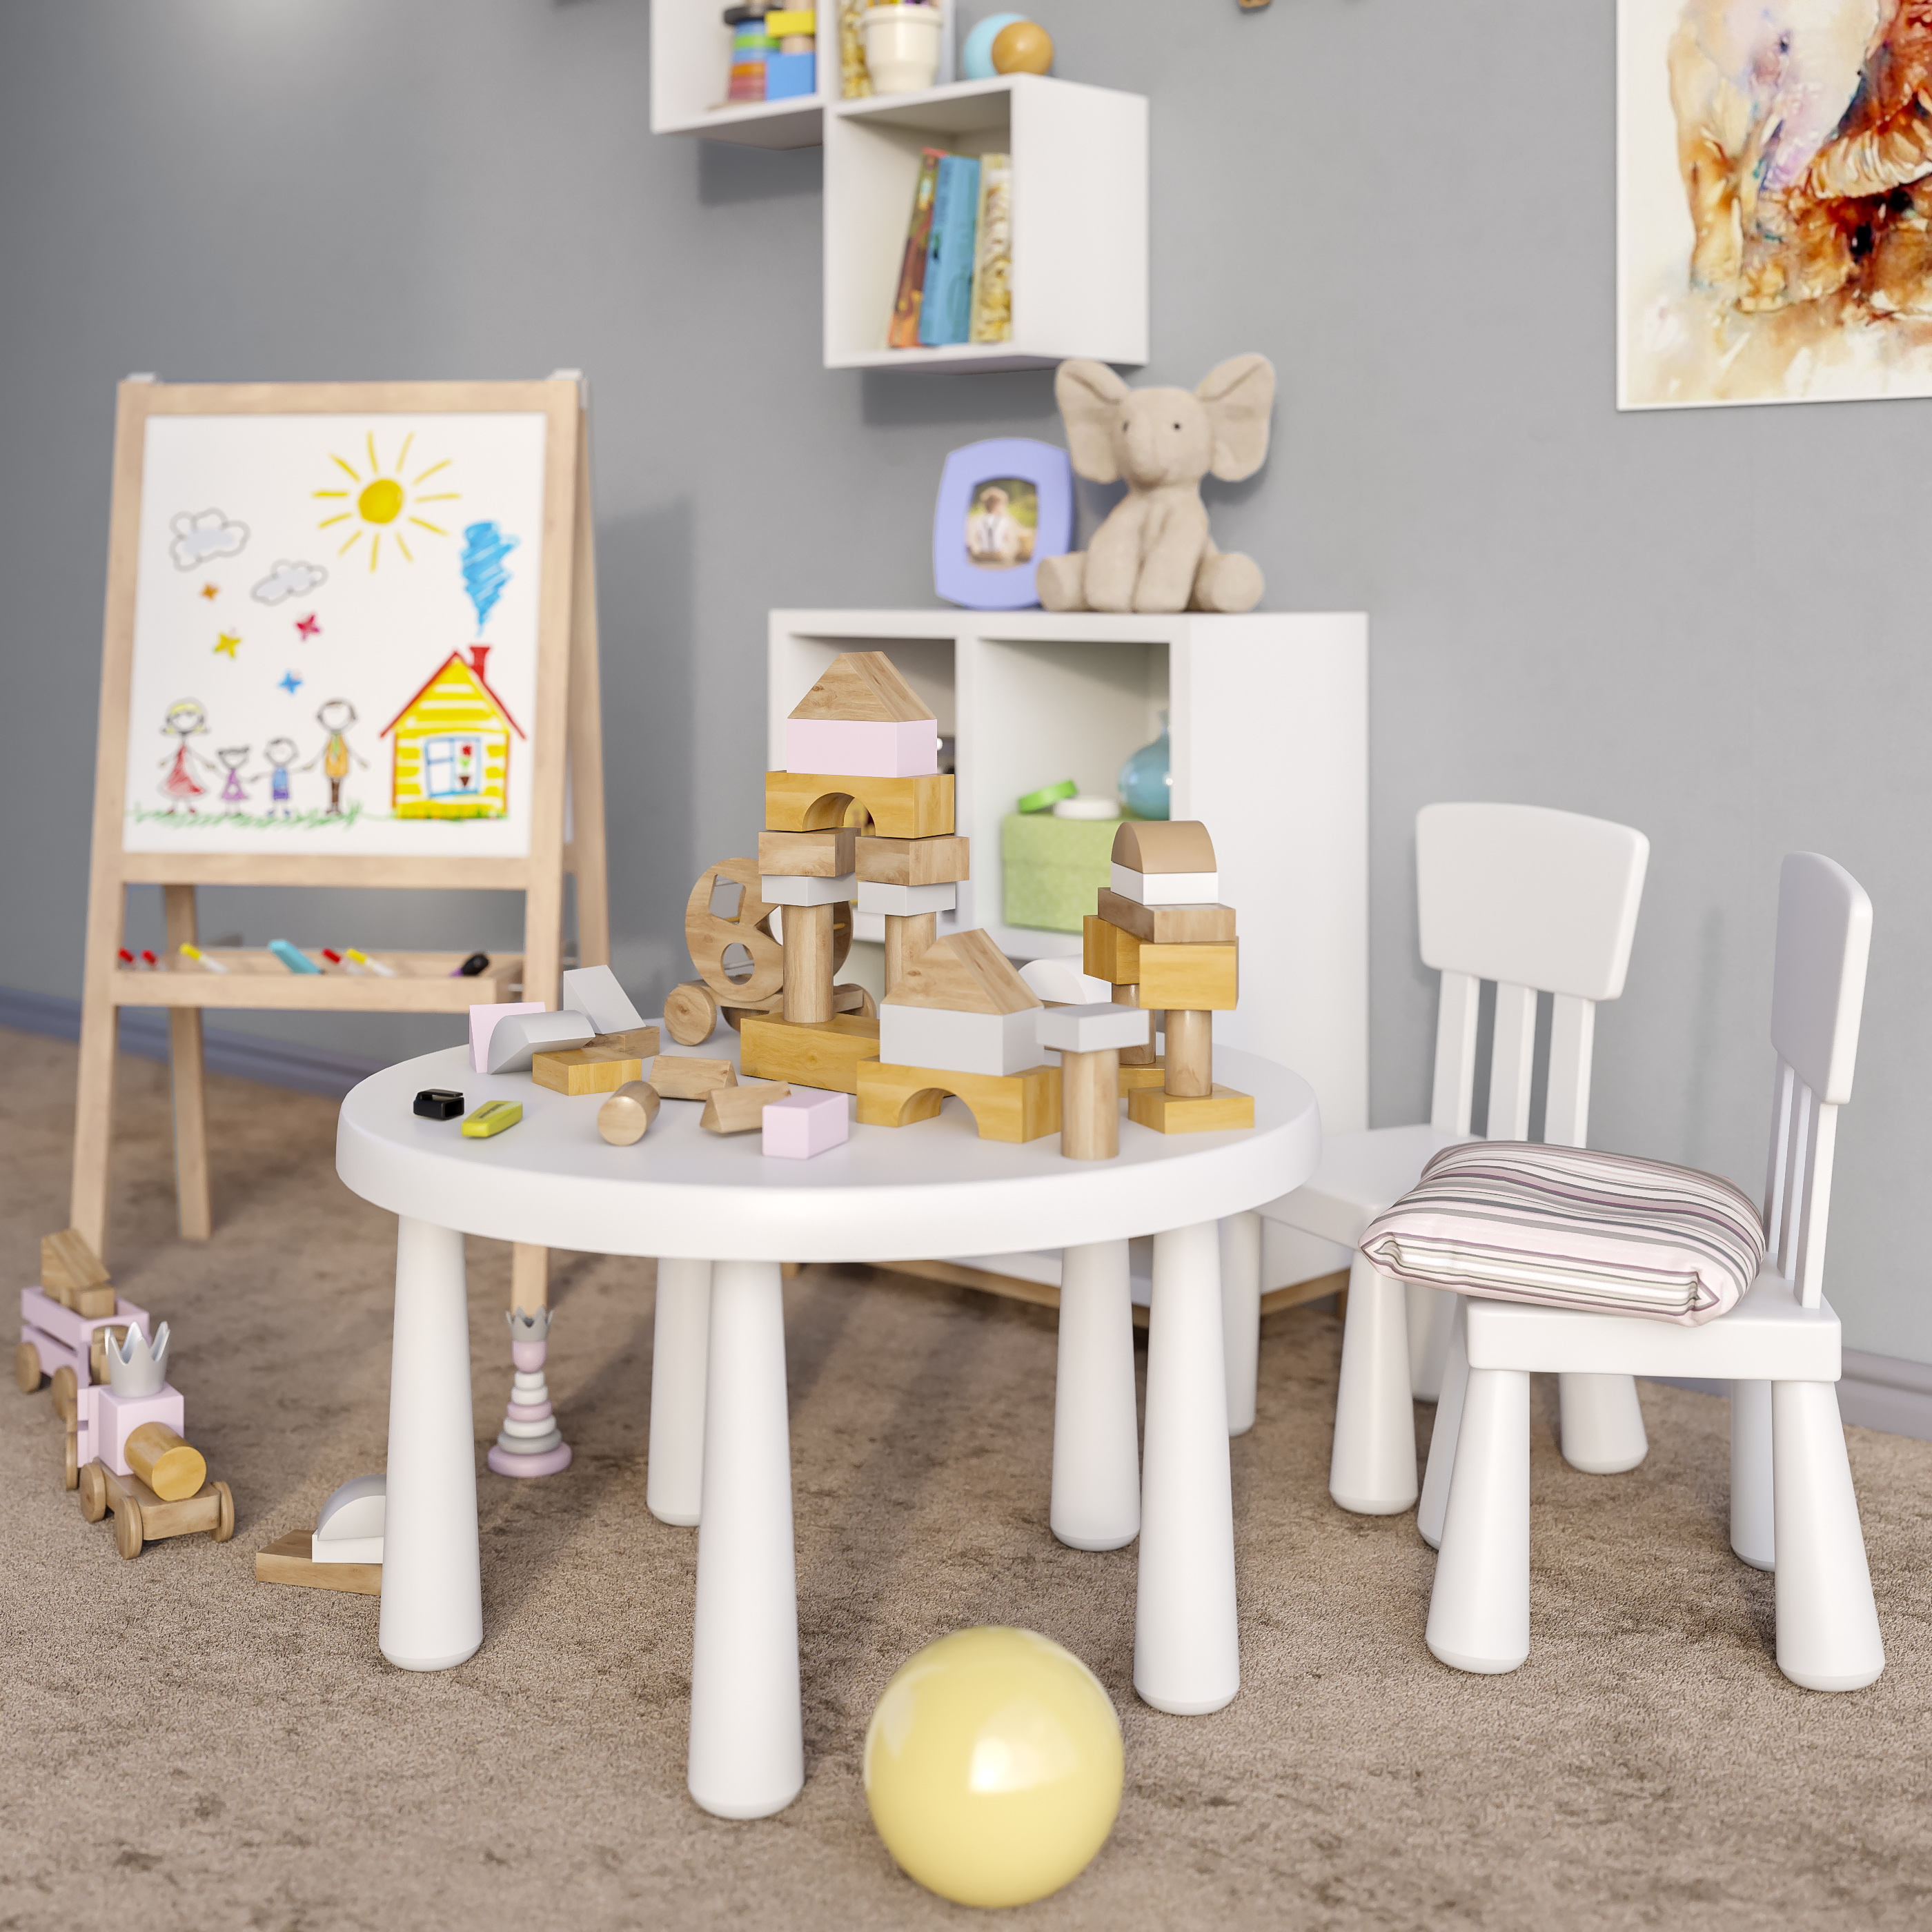 مدل سه بعدی مبلمان اتاق کودک عکس 3